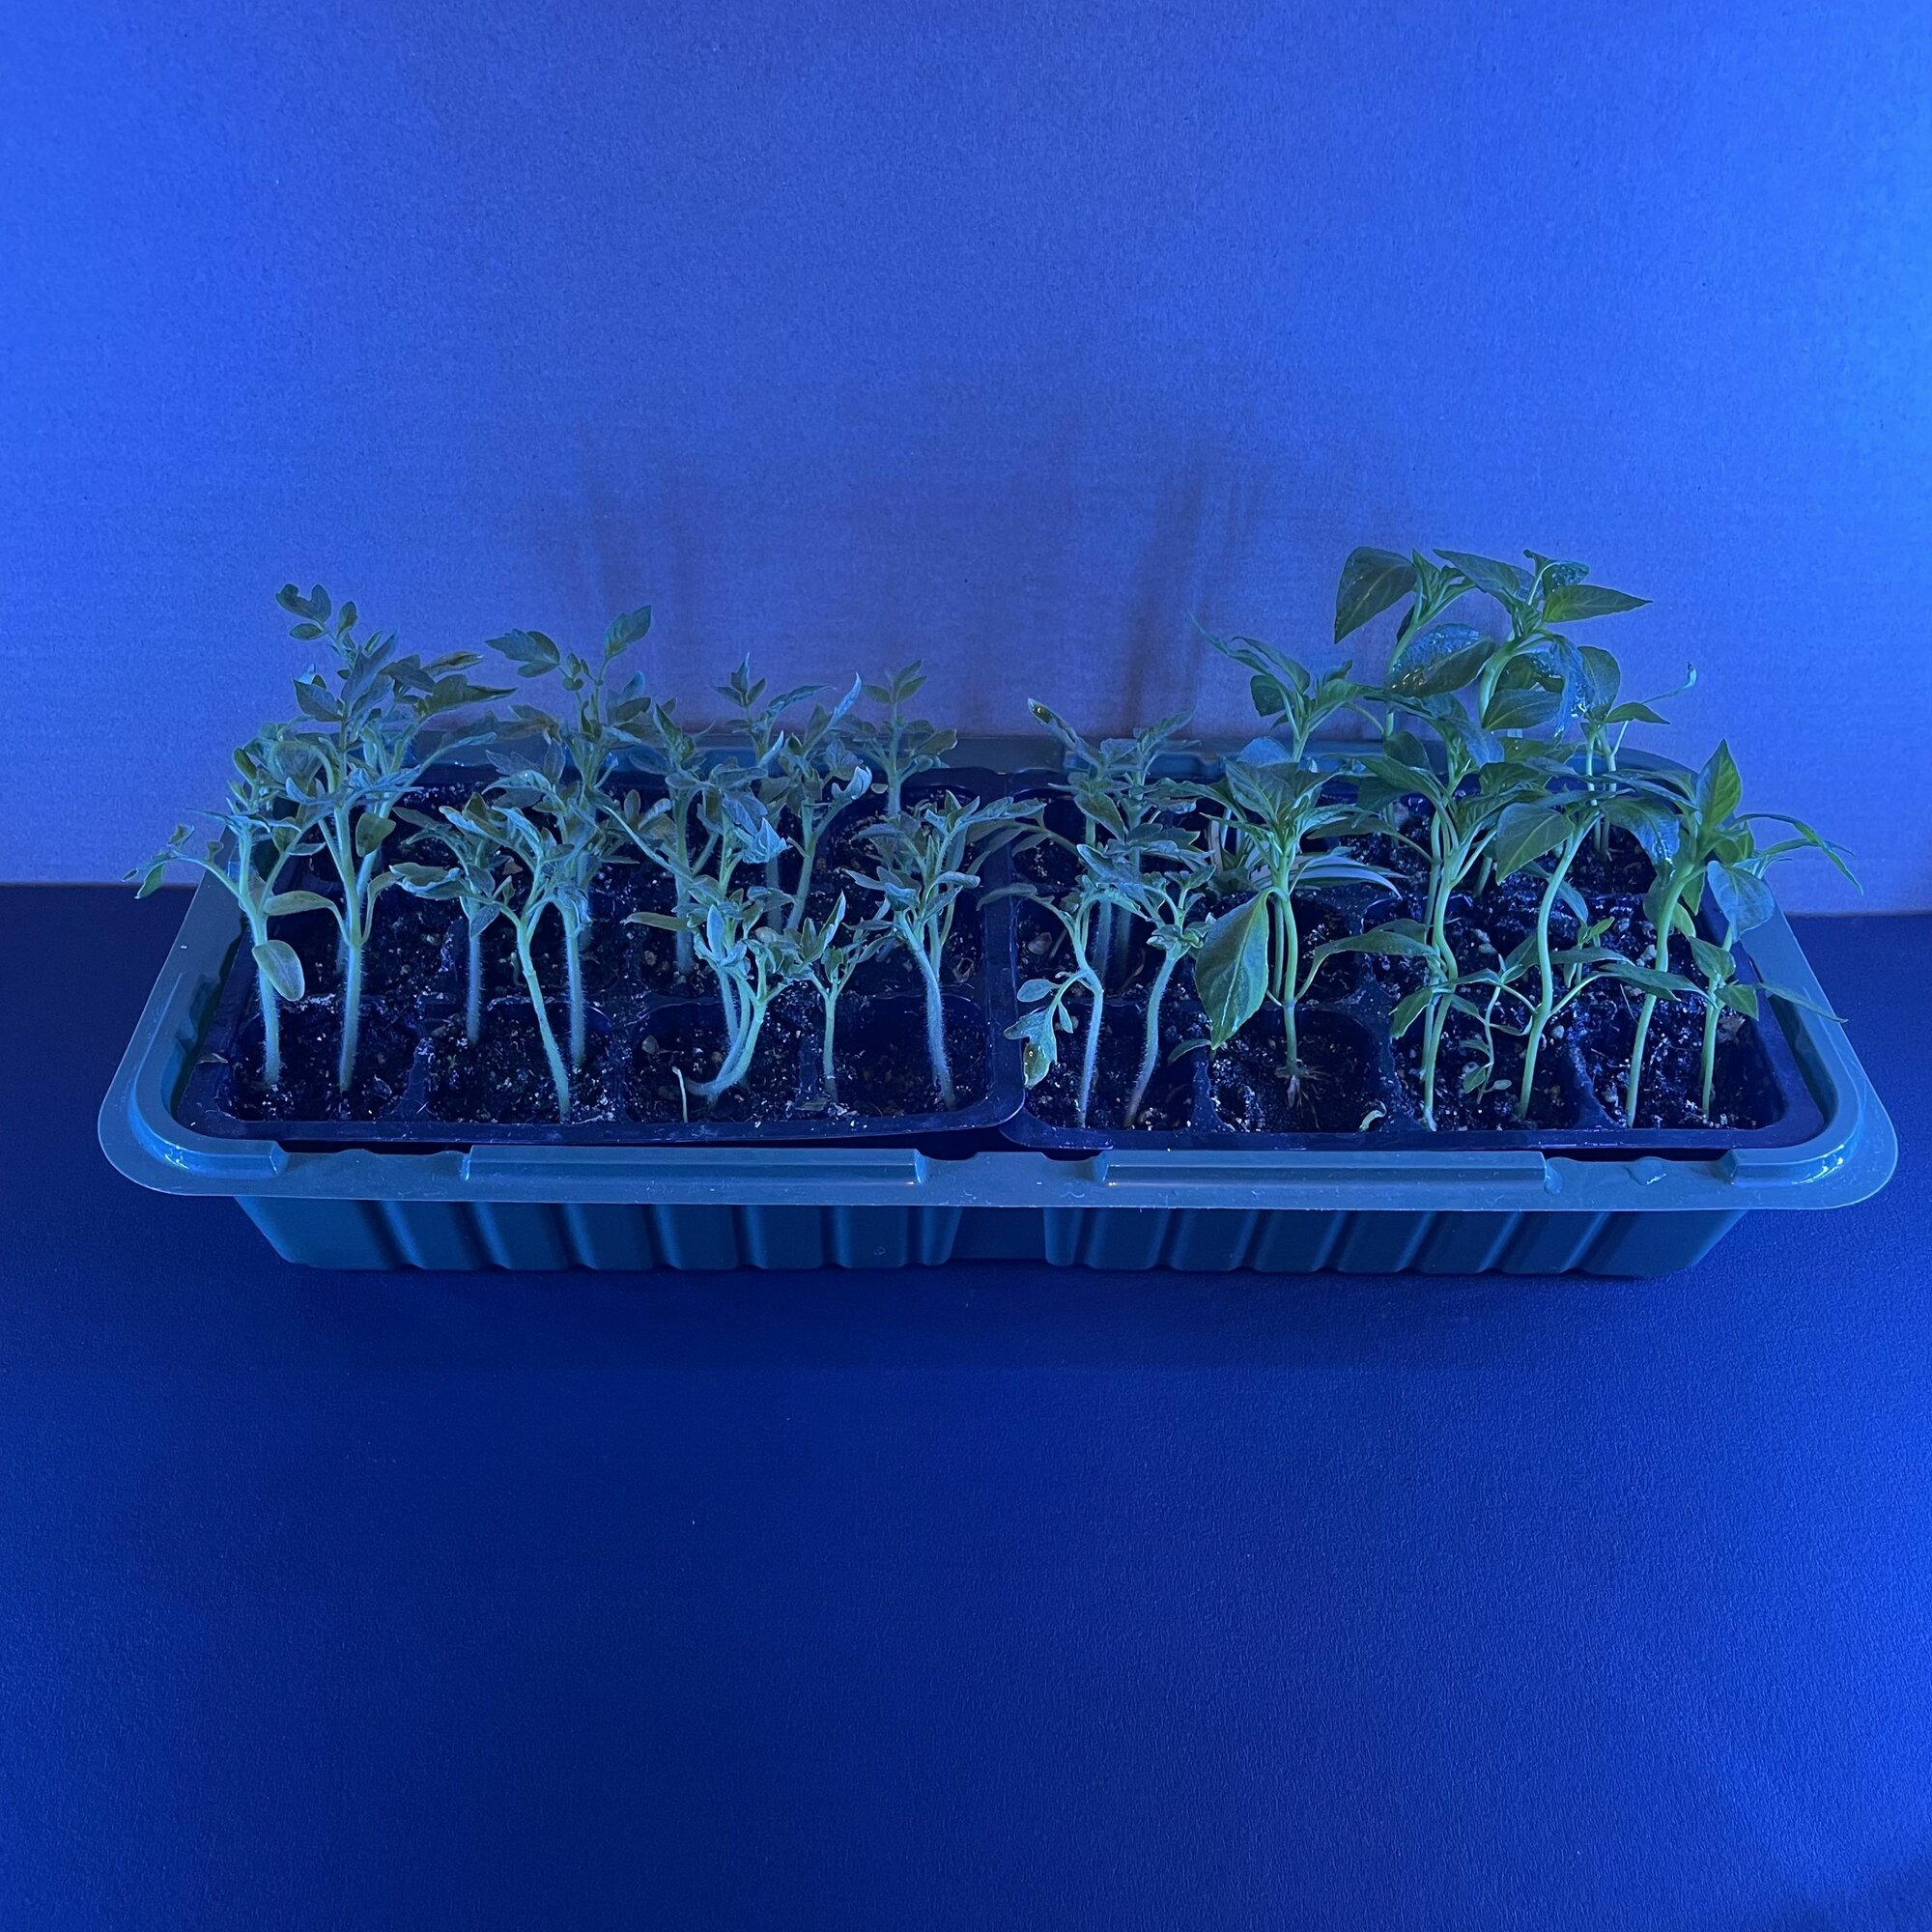 Мини-парник 24 ячейки с подсветкой синий спектр для микрозелени и рассады